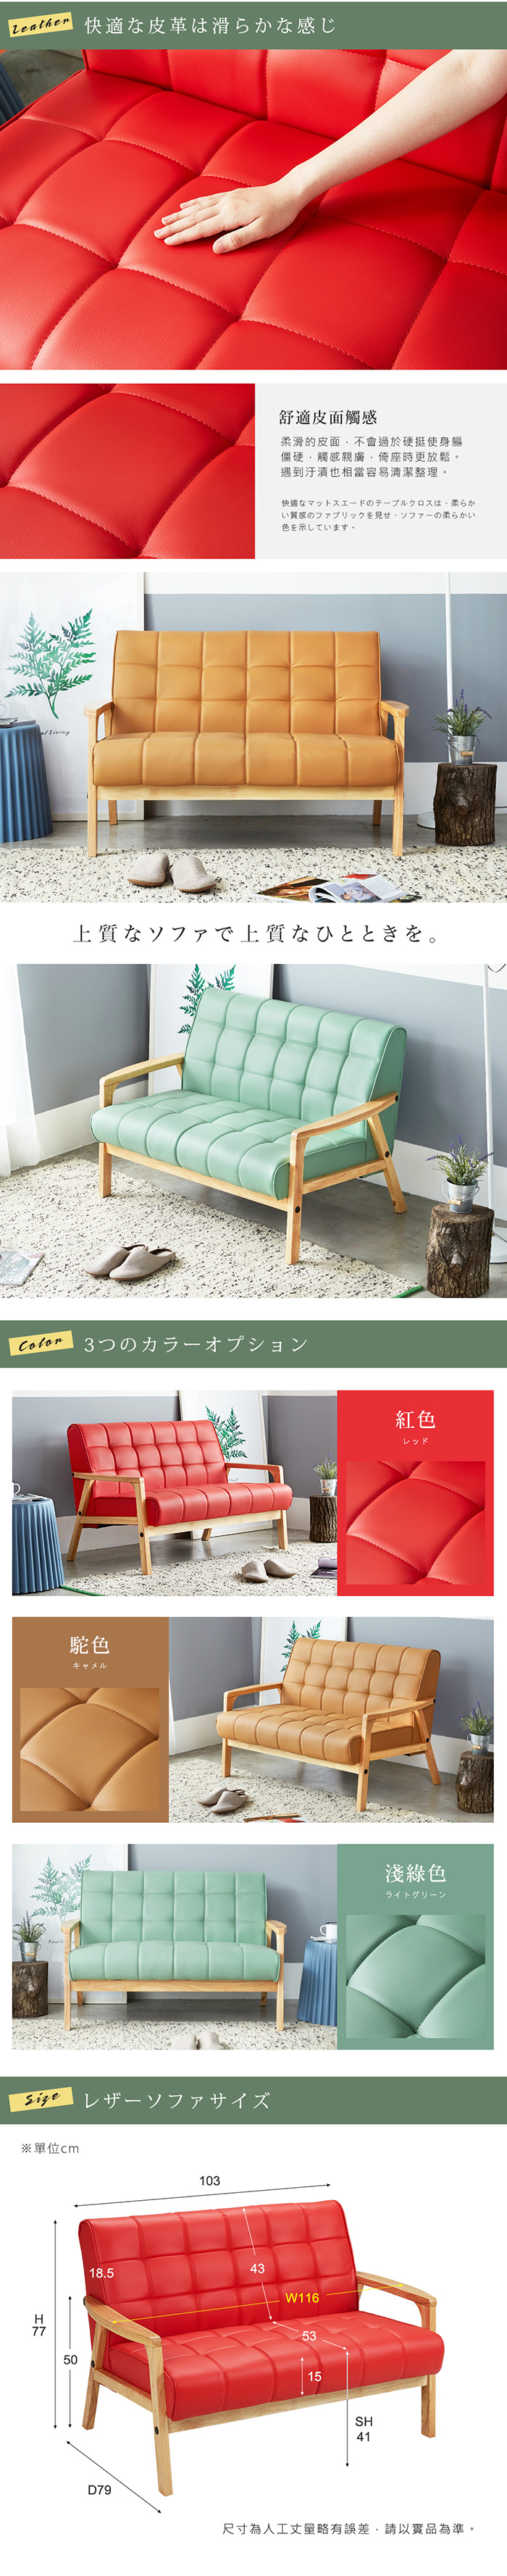 皮沙發 雙人座 摩卡北歐日式亮彩雙人沙發-3色 / H&D東稻家居